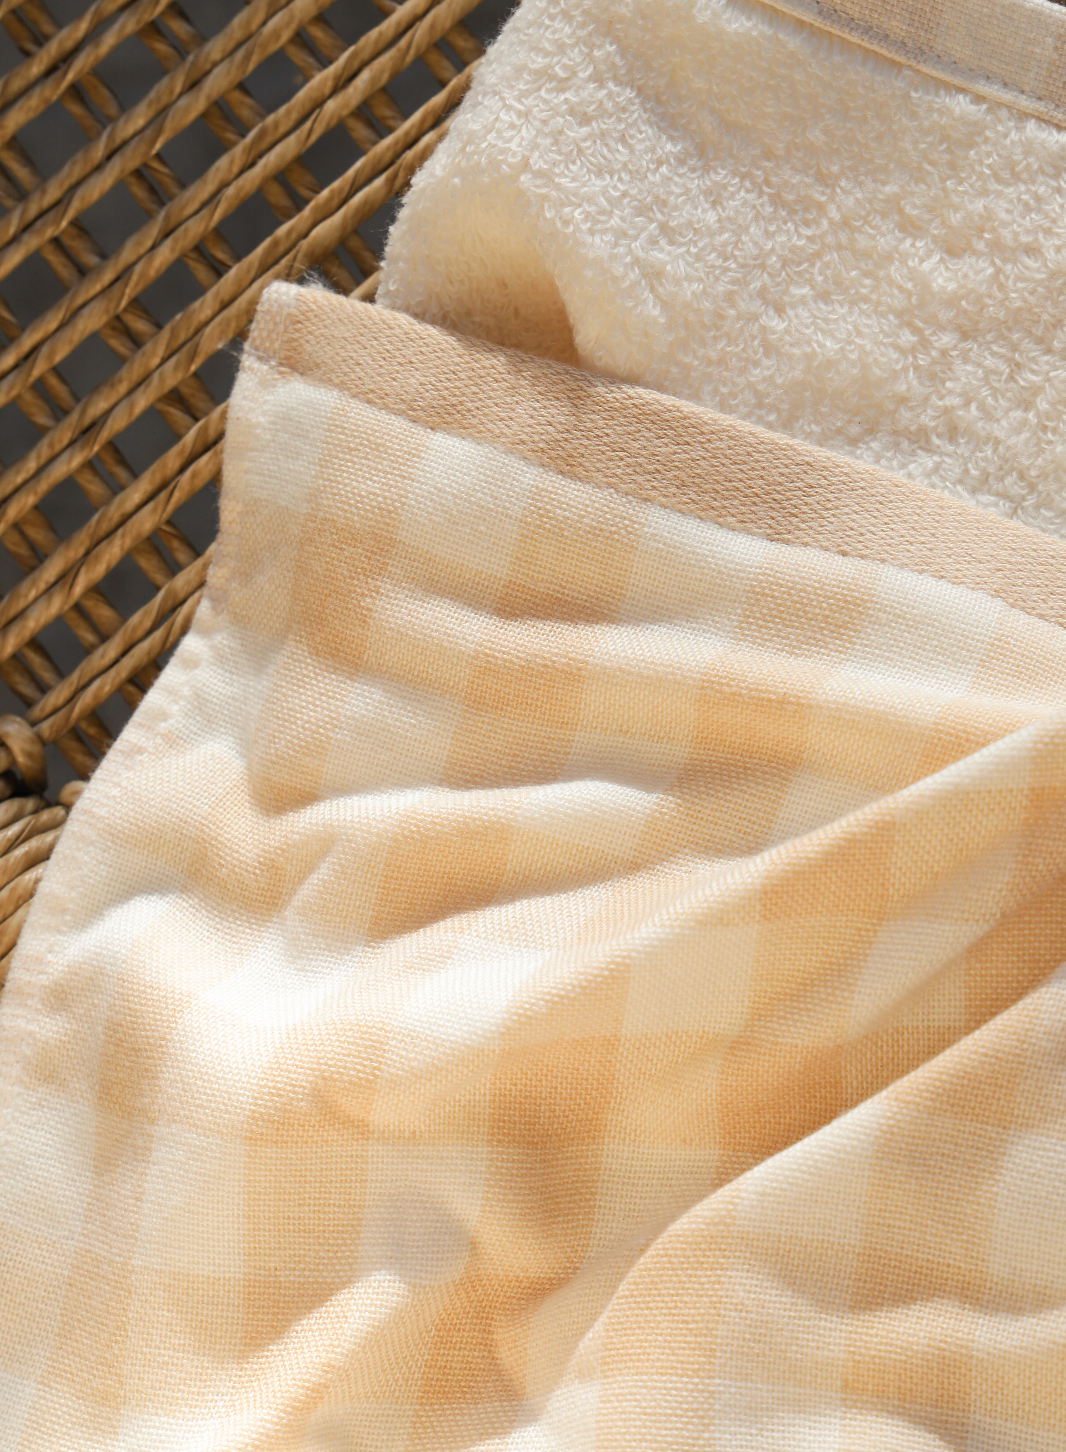 texture of Super soft checks towel 